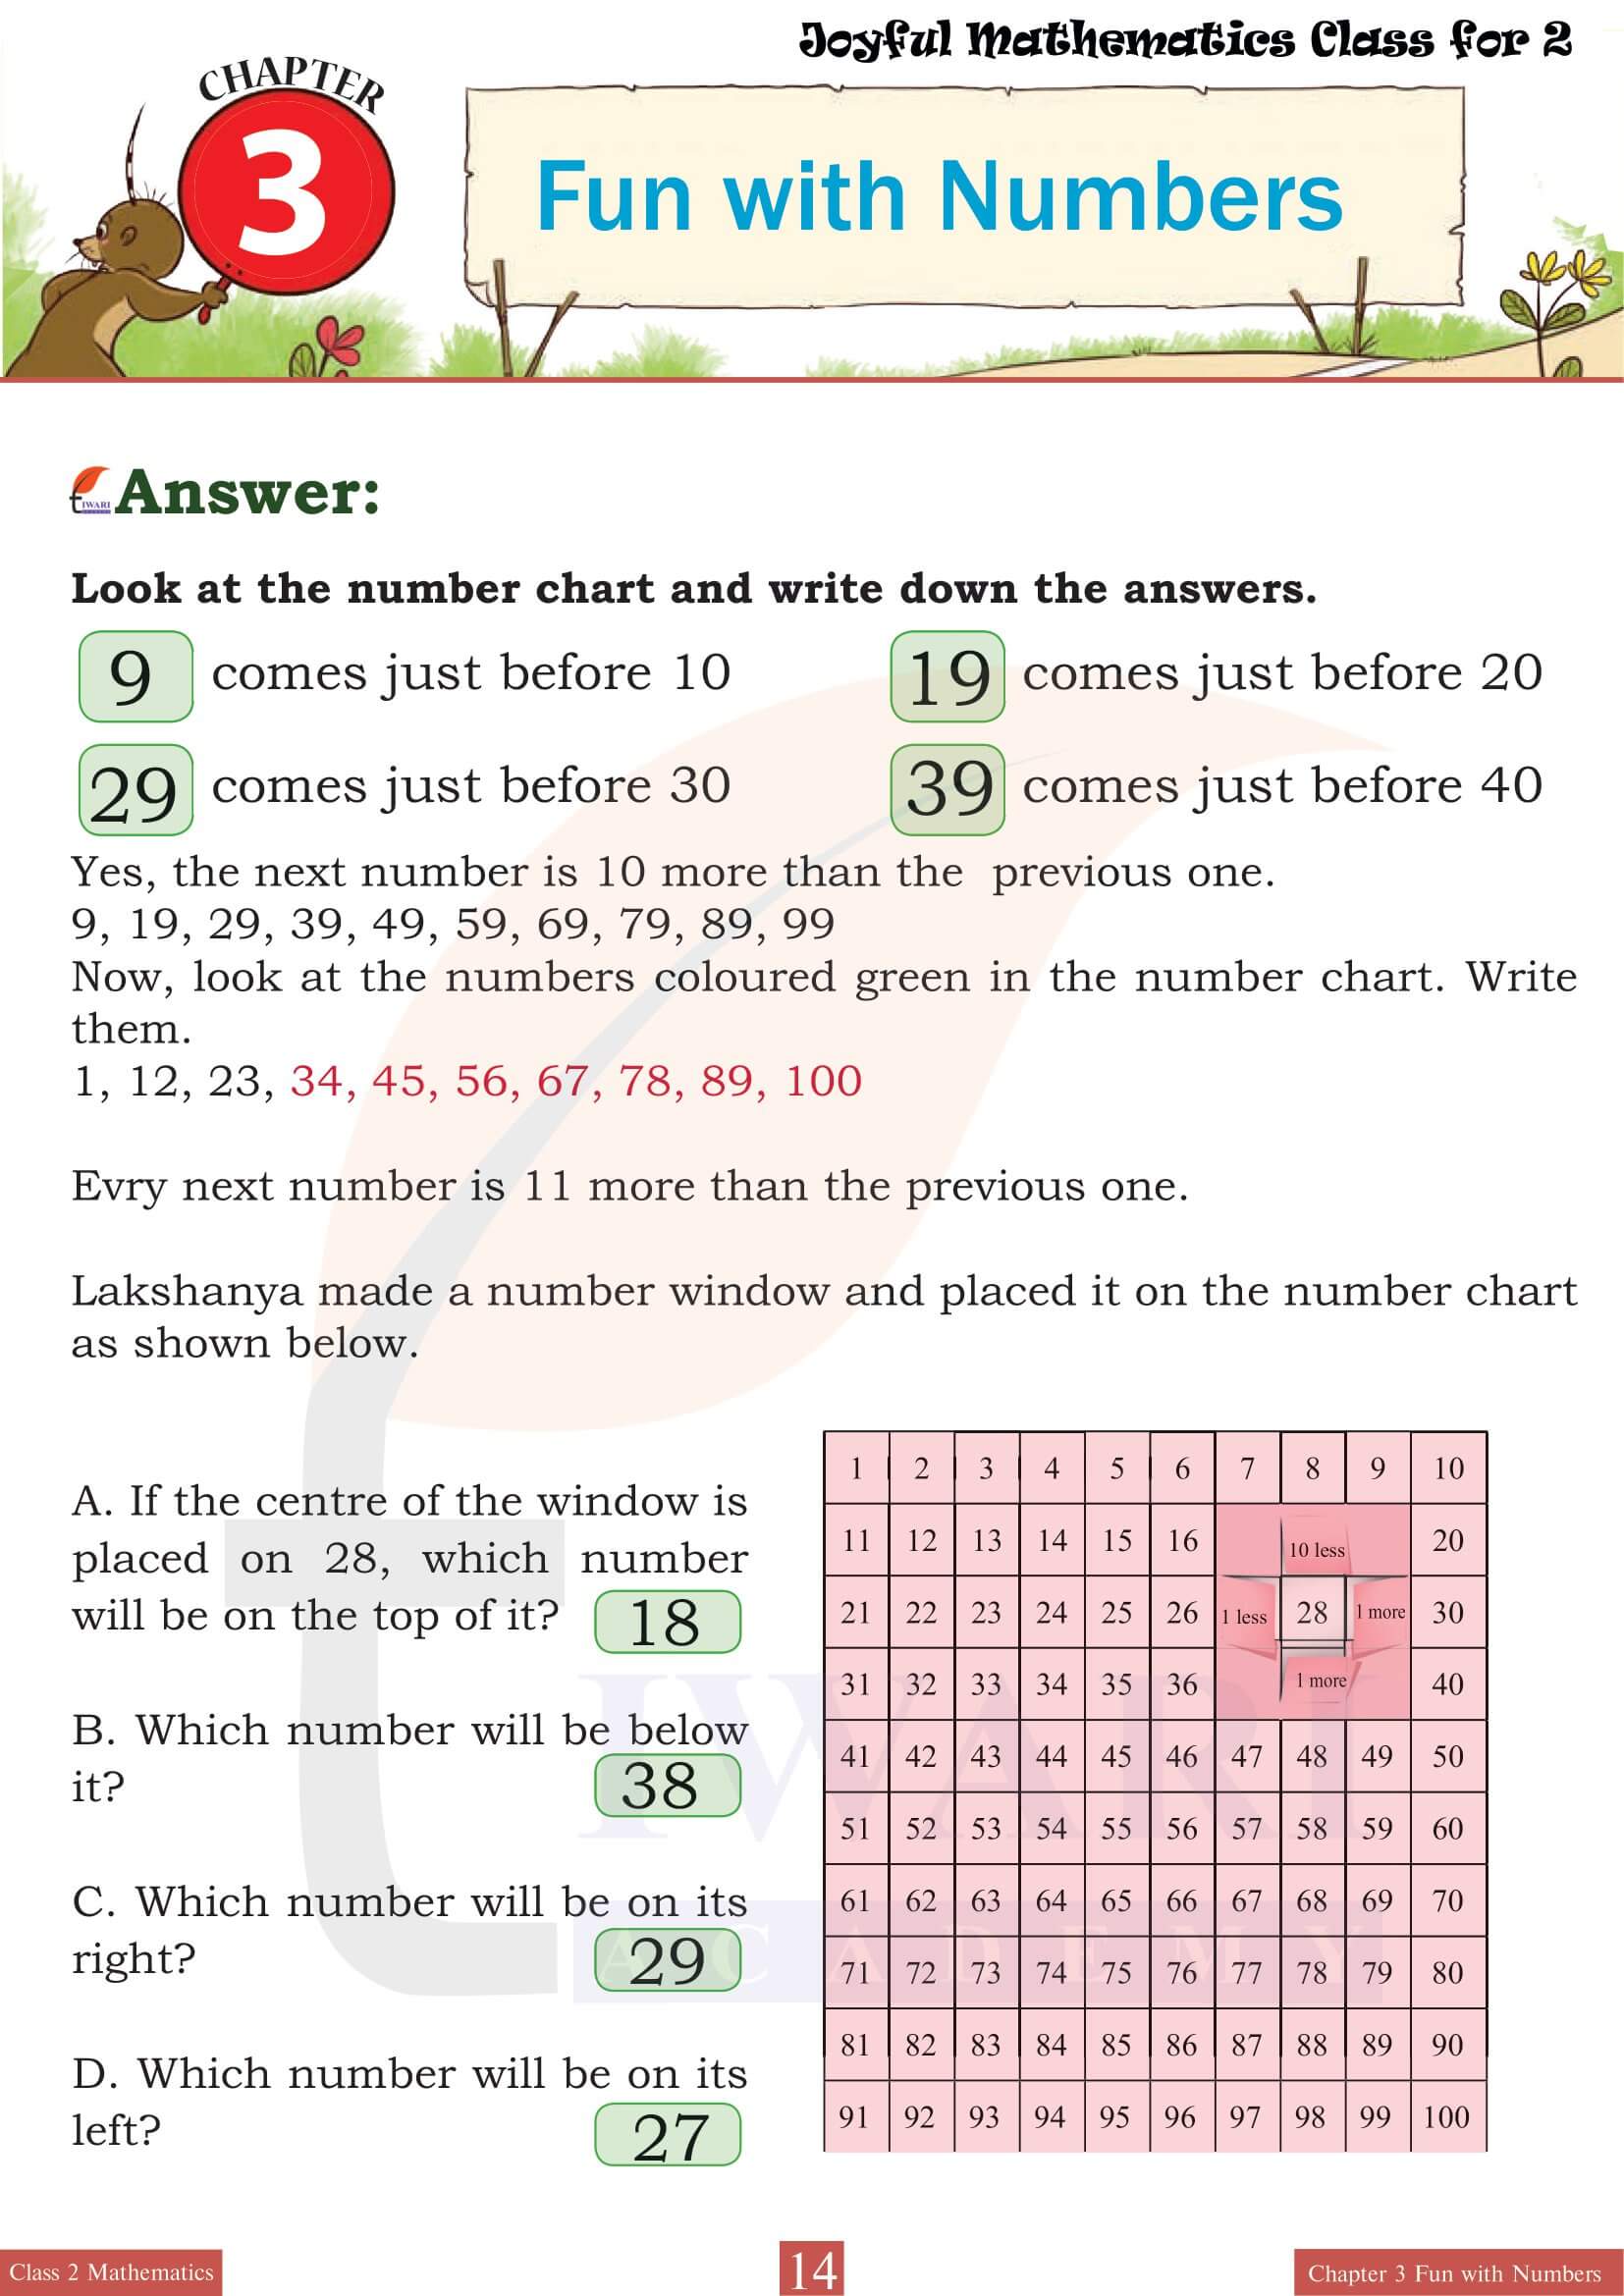 Class 2 Joyful Maths Chapter 3 Revision